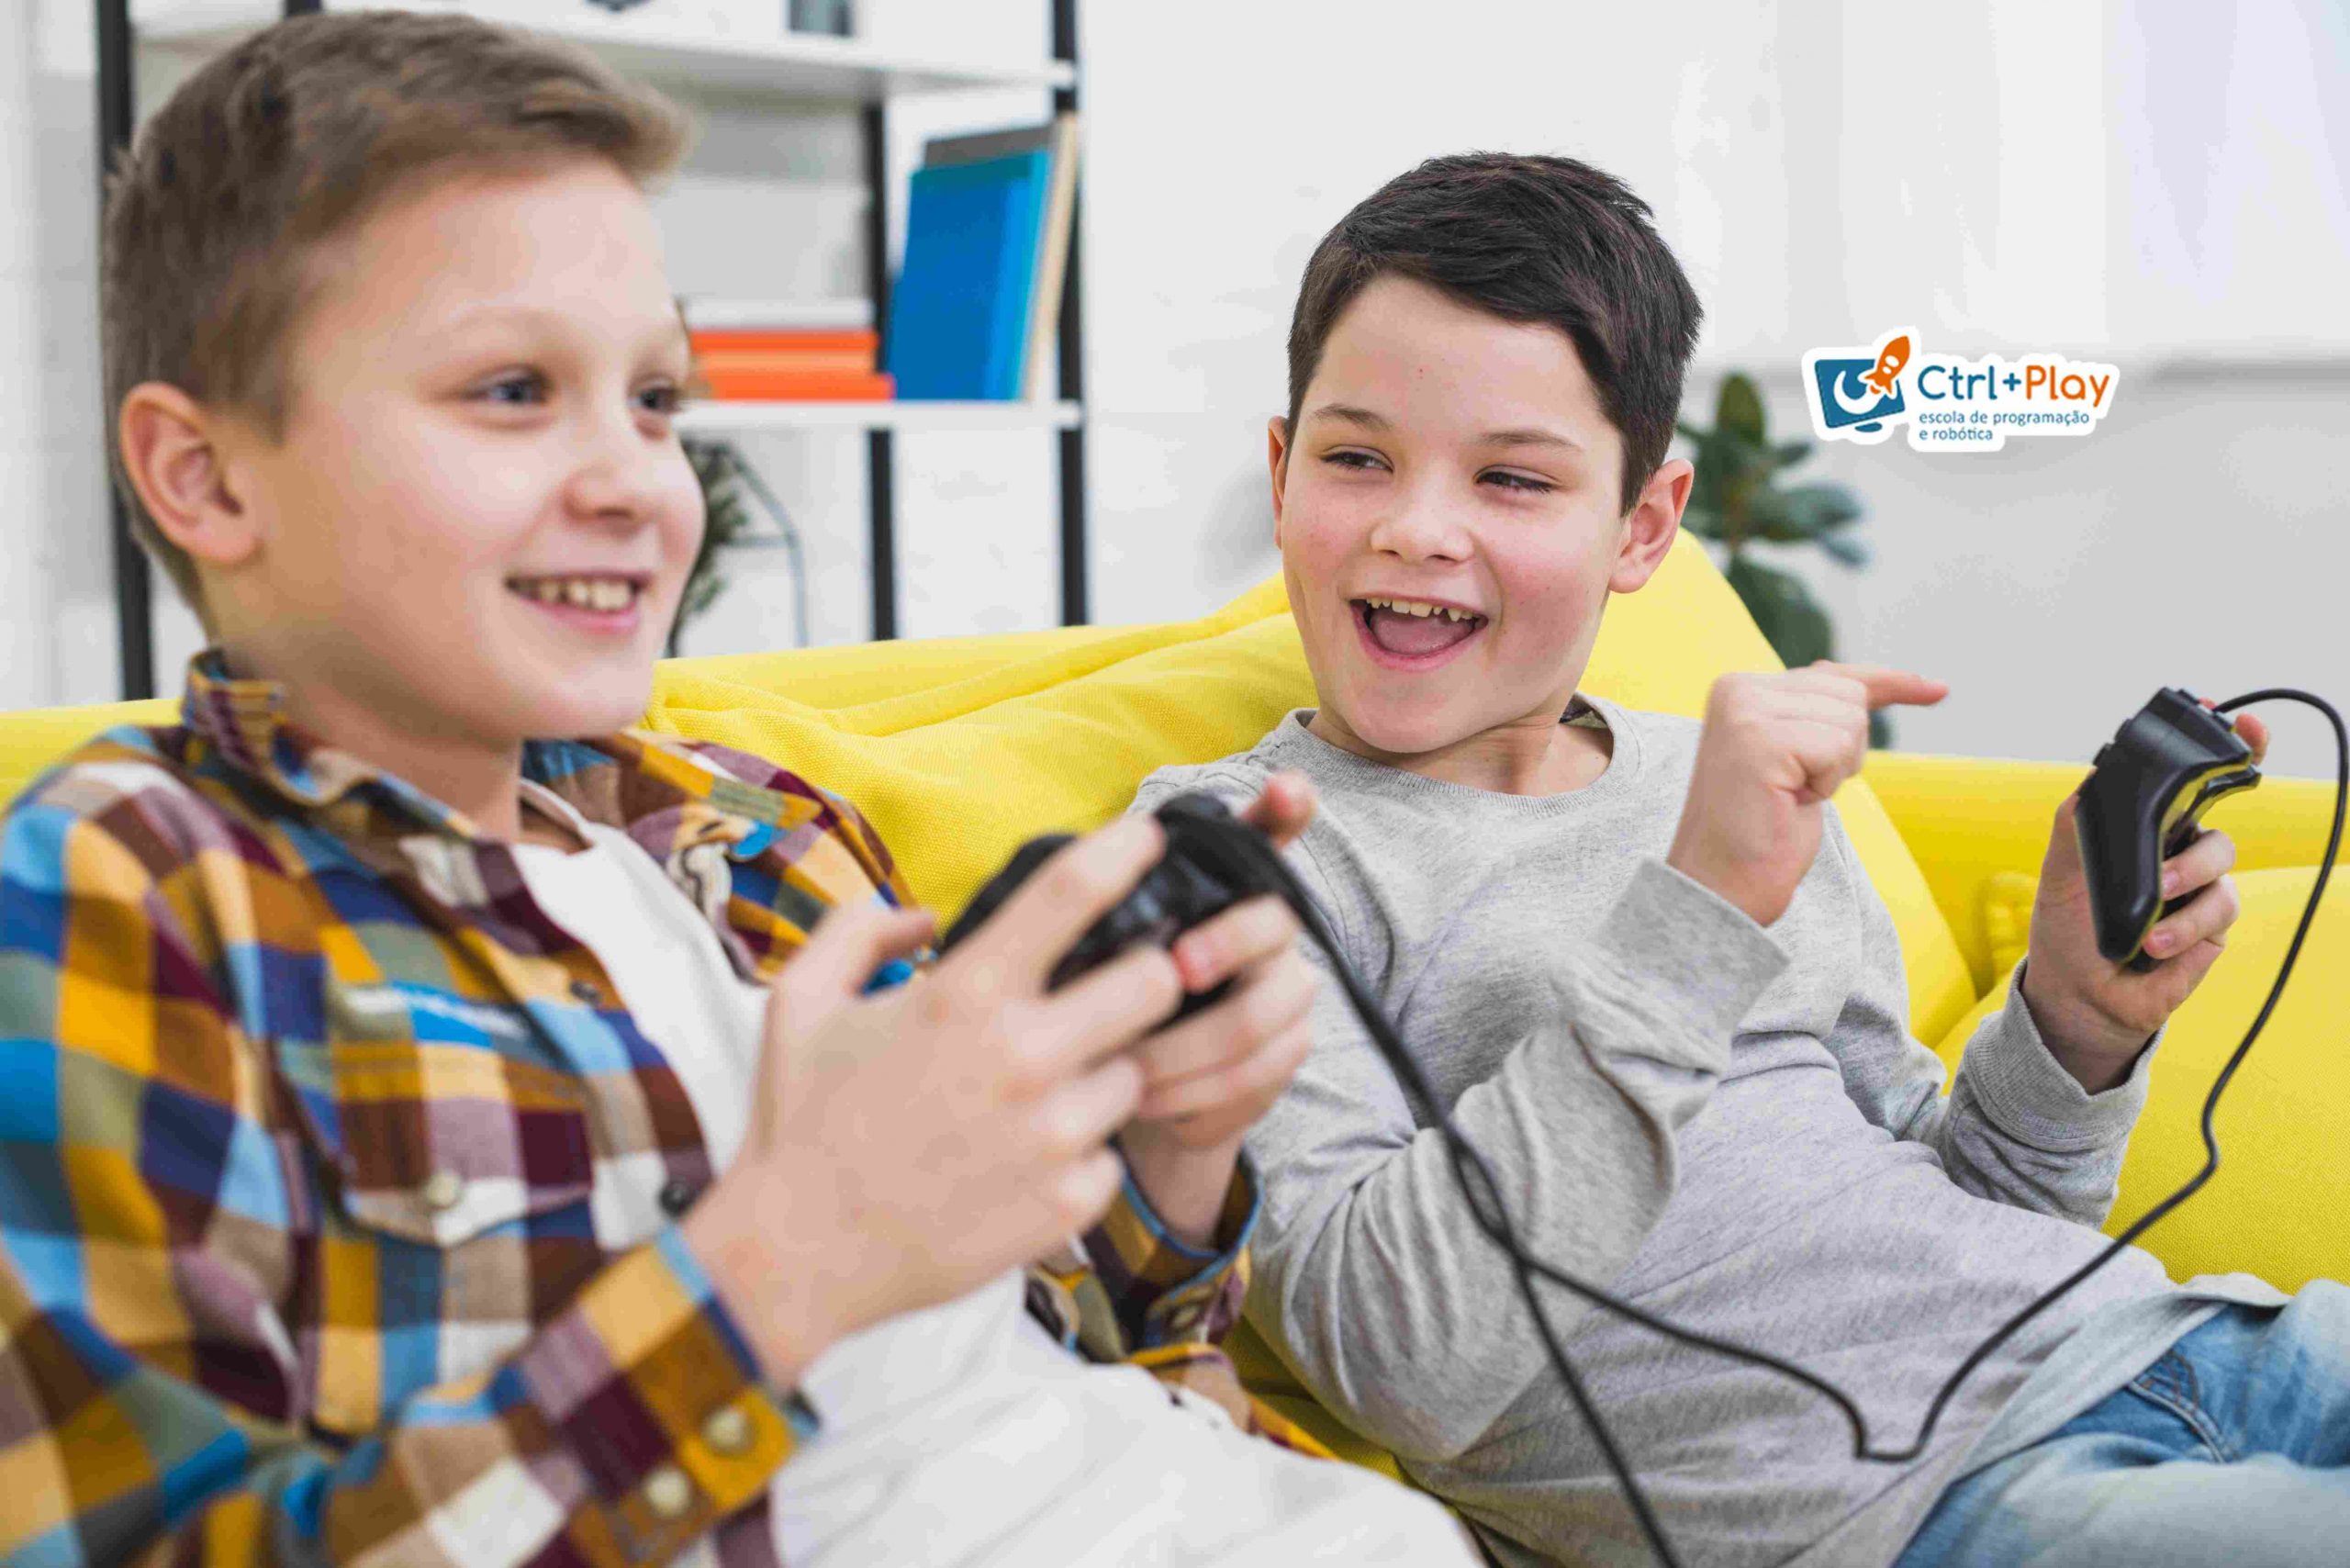 Desenvolvedor de jogos: veja como seu filho pode criar os próprios games! -  Ctrl + Play